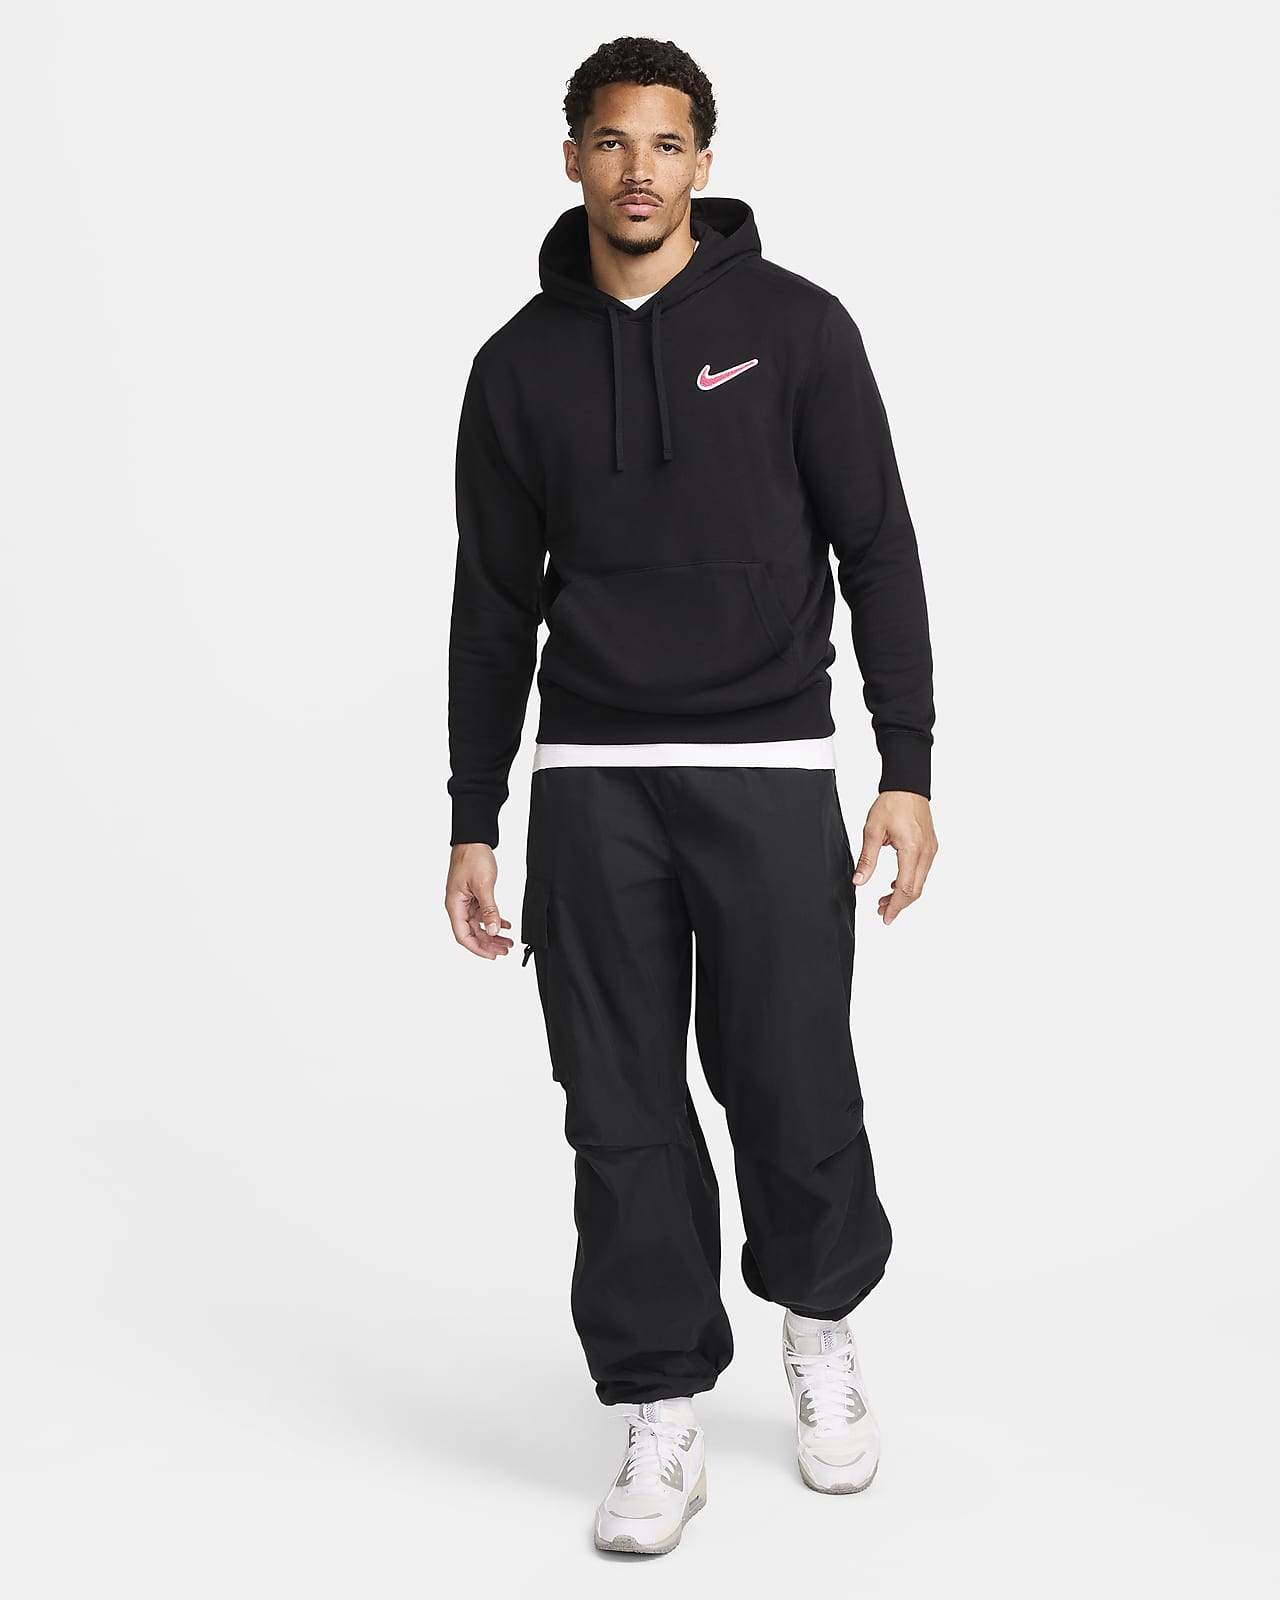 Nike Sportswear Men's Club Fleece Pullover Hoodie